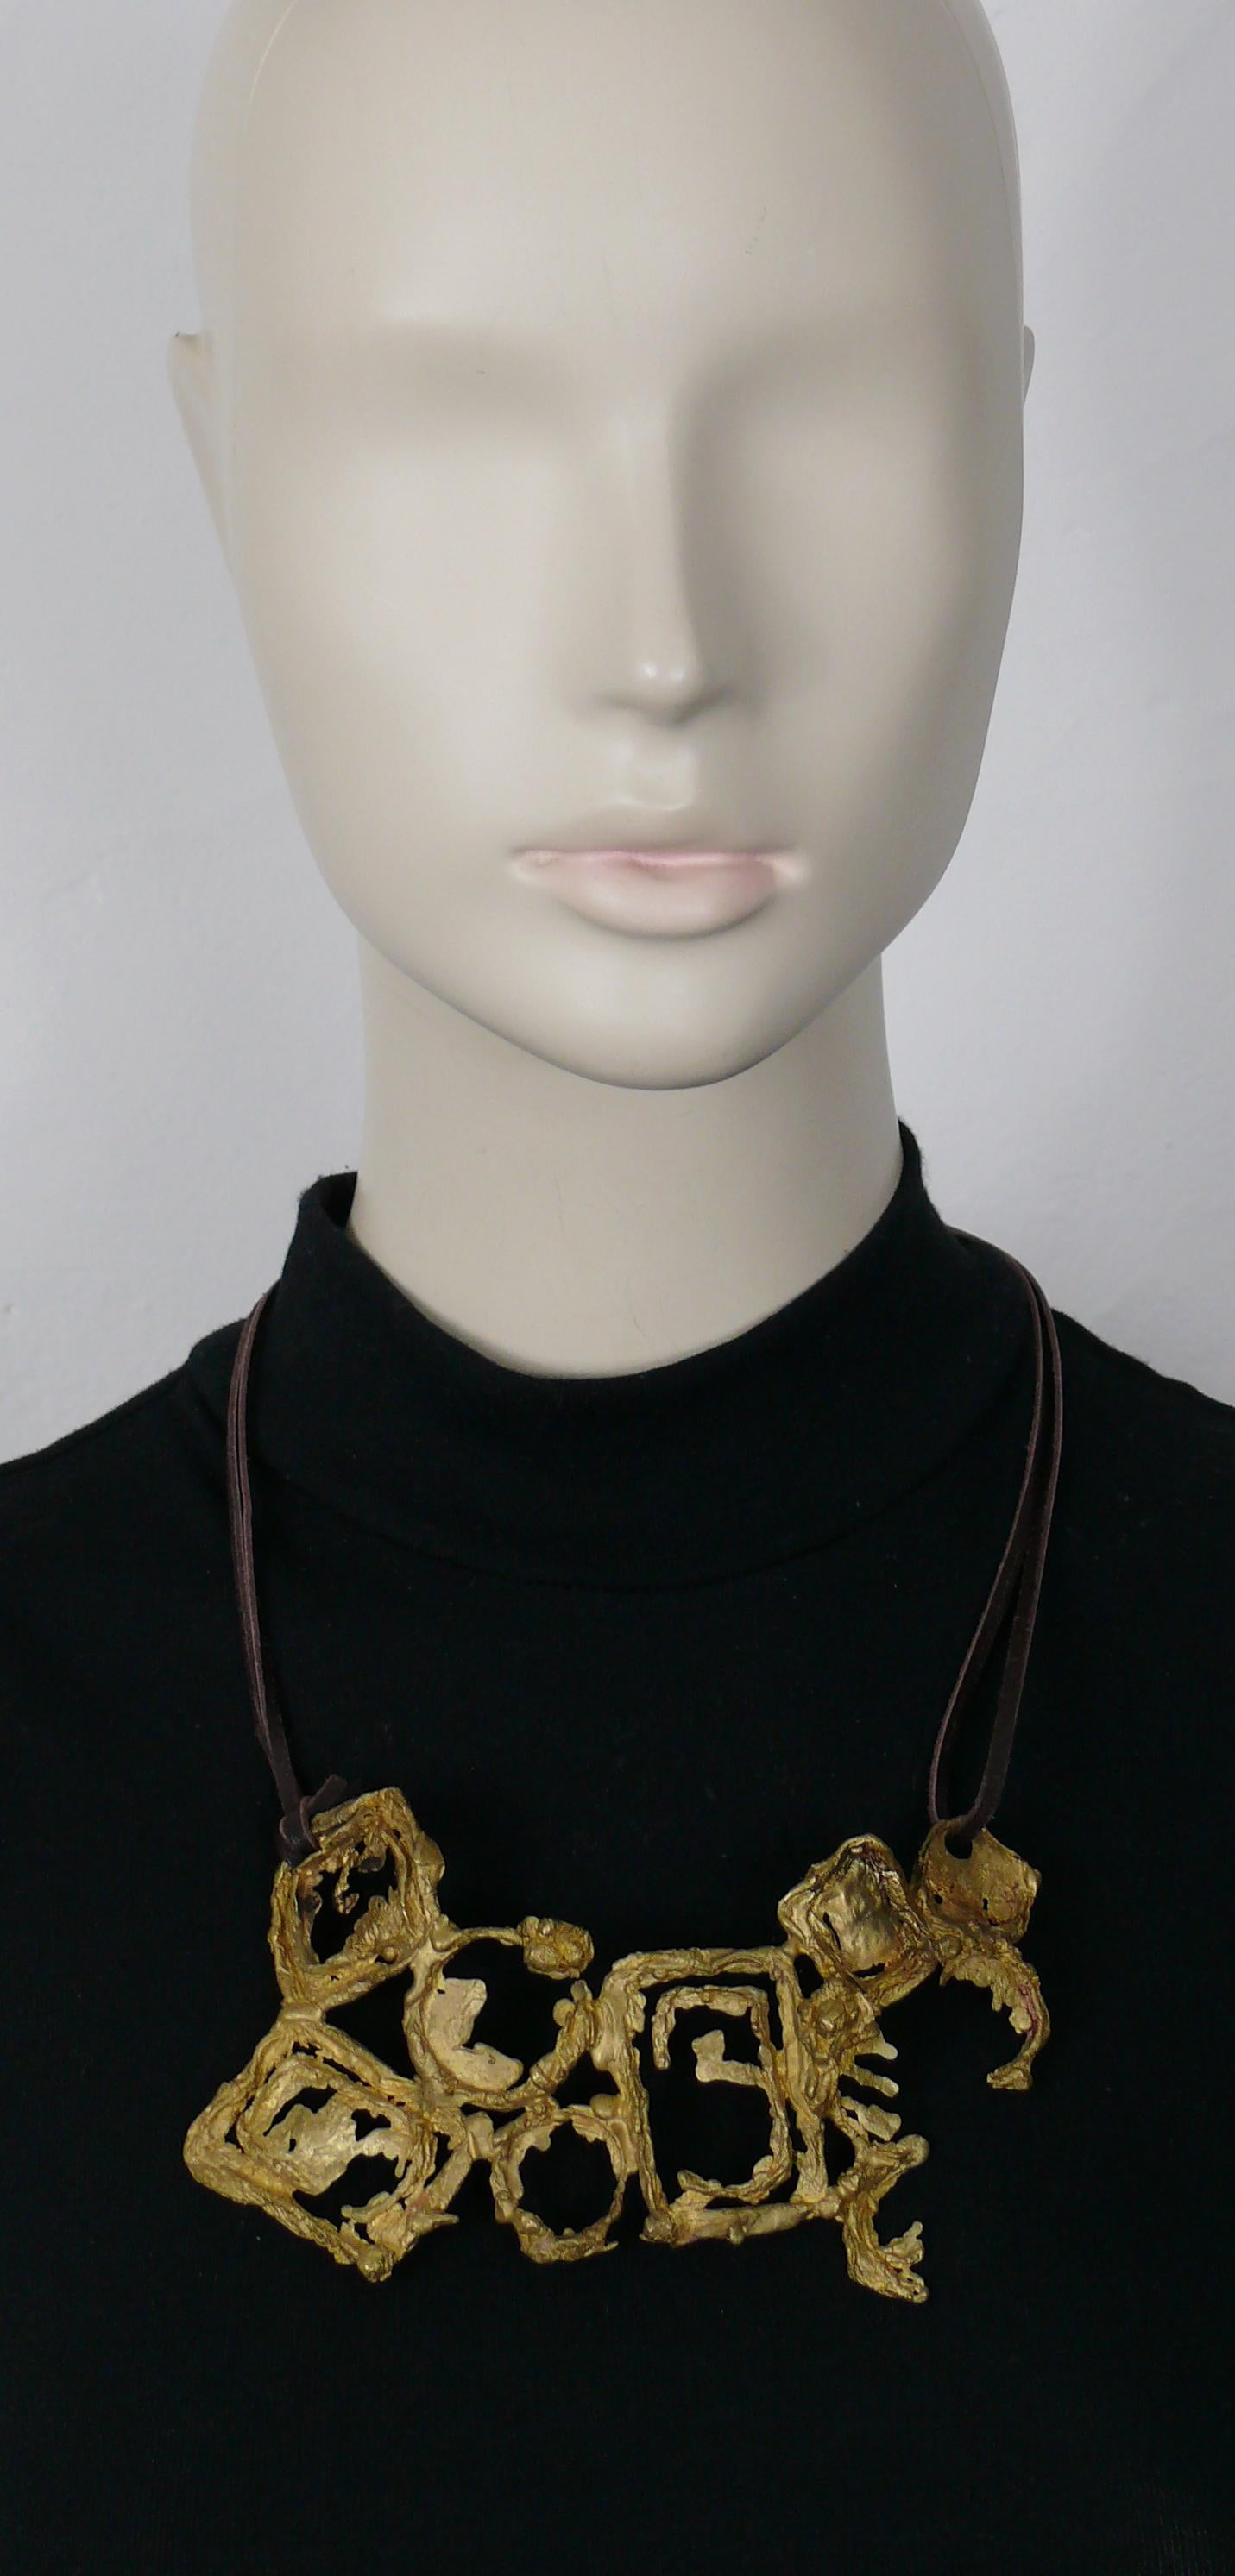 CHRISTIAN LACROIX by CHRISTIANE BILLET Vintage oxidierte Bronze Ton skulpturalen brutalistischen Halskette.

Braunes Lederband (das in der gewünschten Länge an das Metallstück geknotet wird).

Gezeichnet CL Paris CHRISTIAN LACROIX.

MATERIAL :